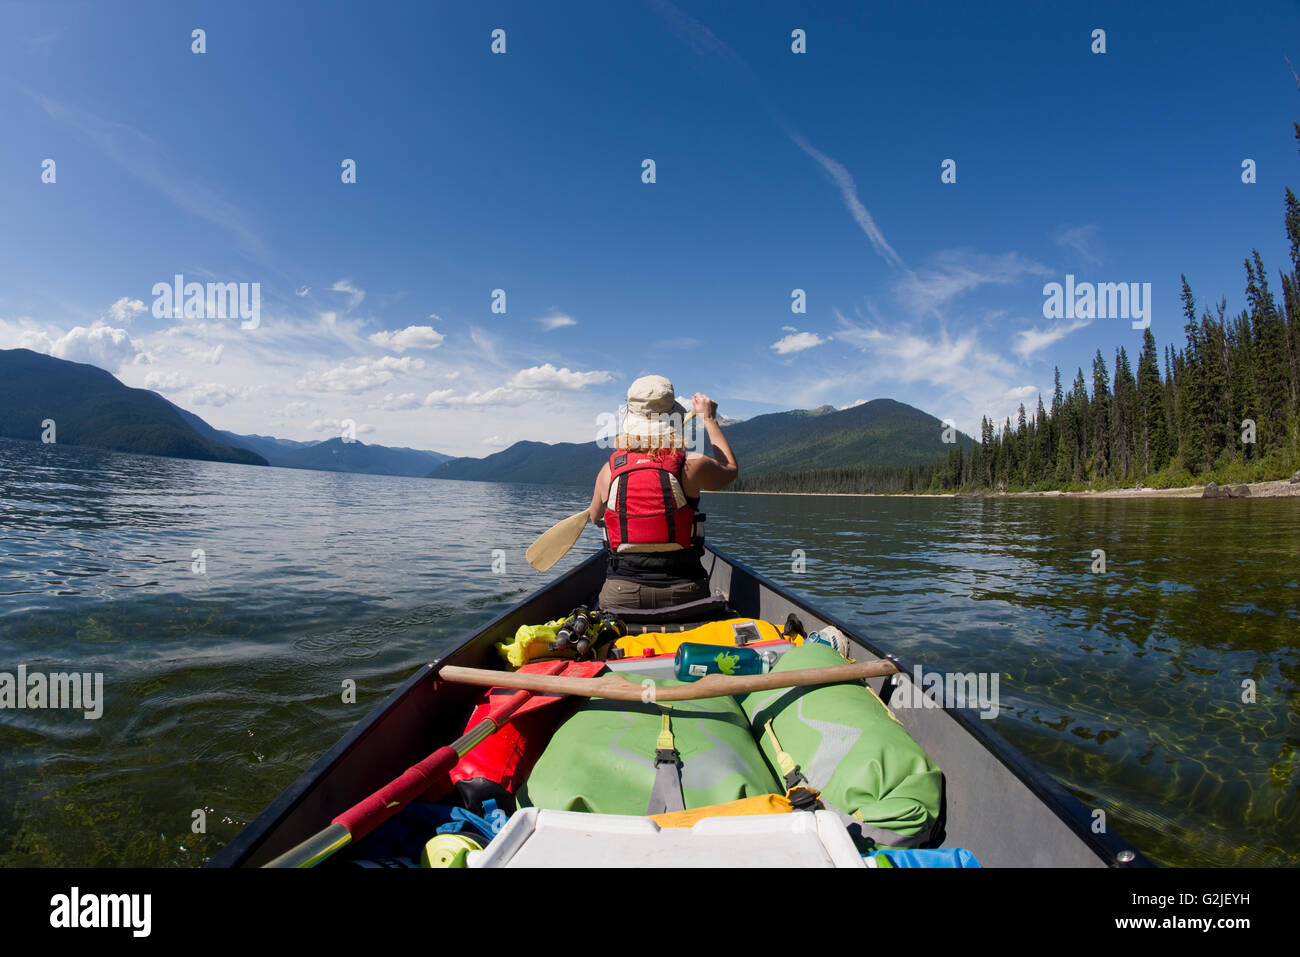 Canoa e campeggio sul braccio del nord del Lago Murtle. Grey Parco Provinciale. Blue River, British Columbia. Canada Foto Stock